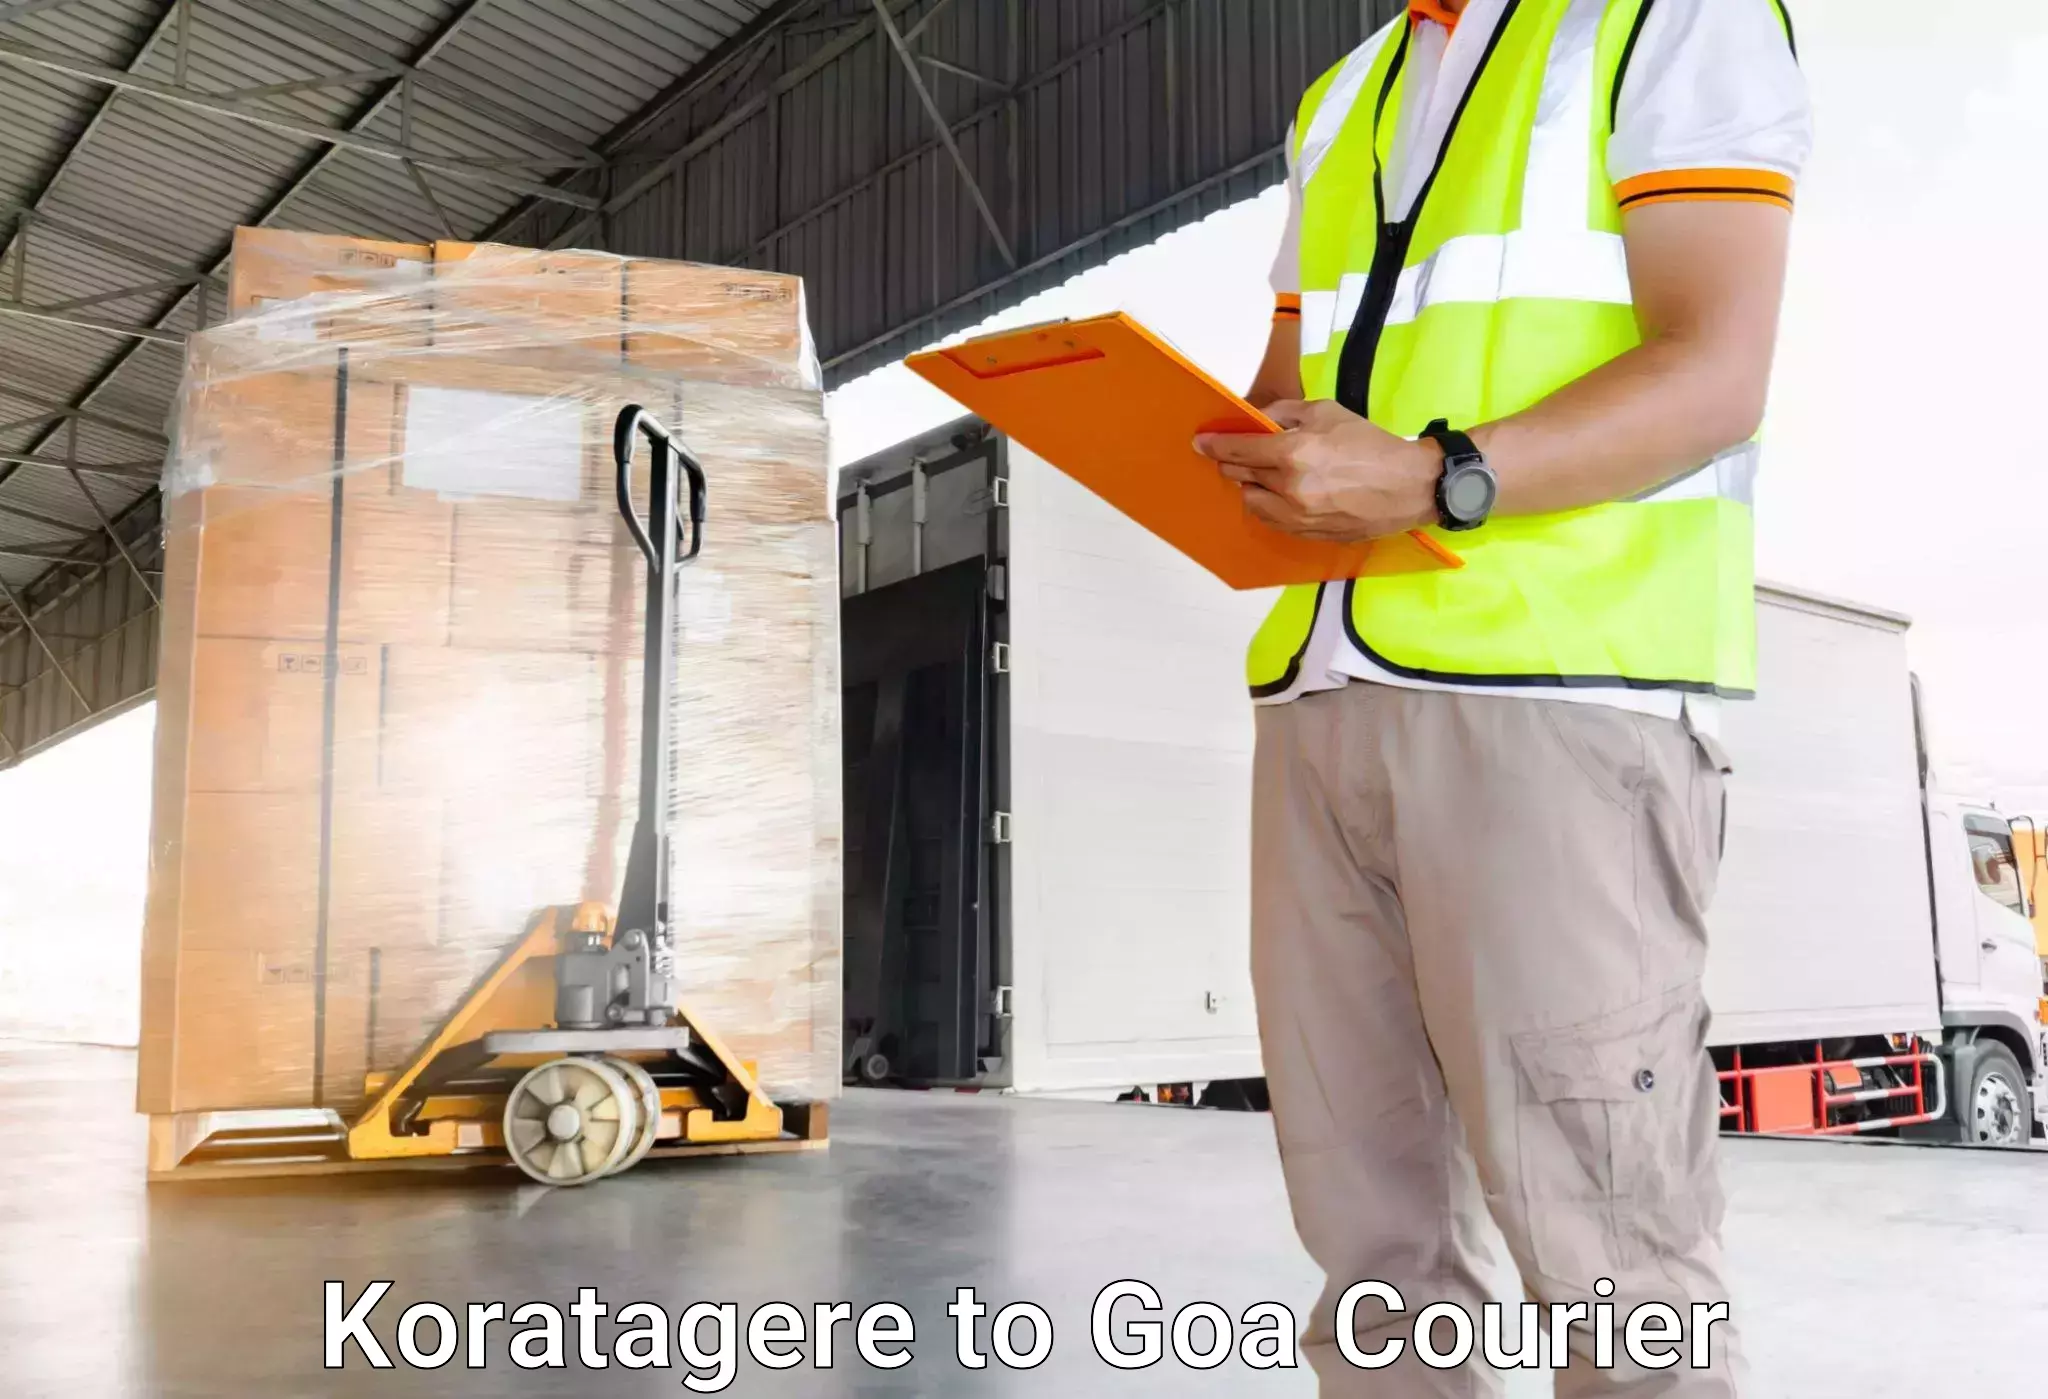 Luggage delivery optimization Koratagere to Ponda